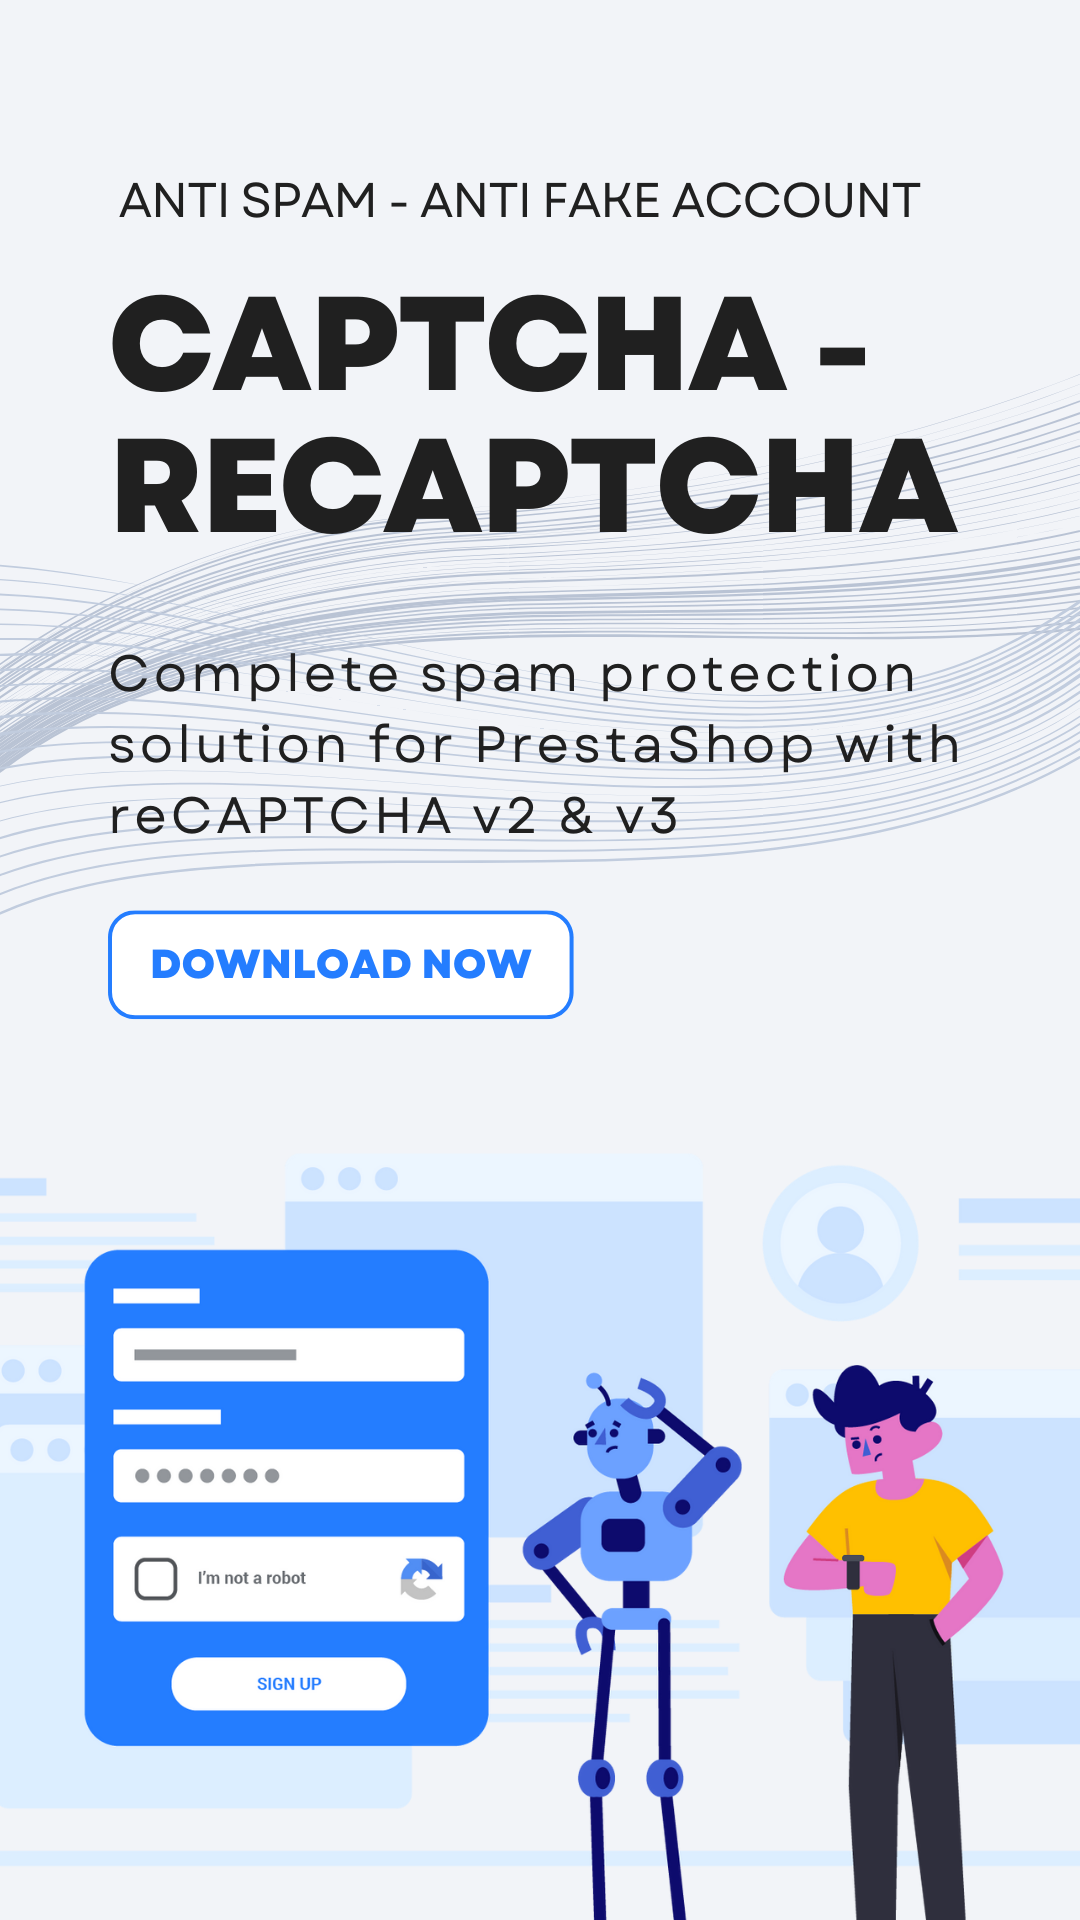 Captcha - recaptcha